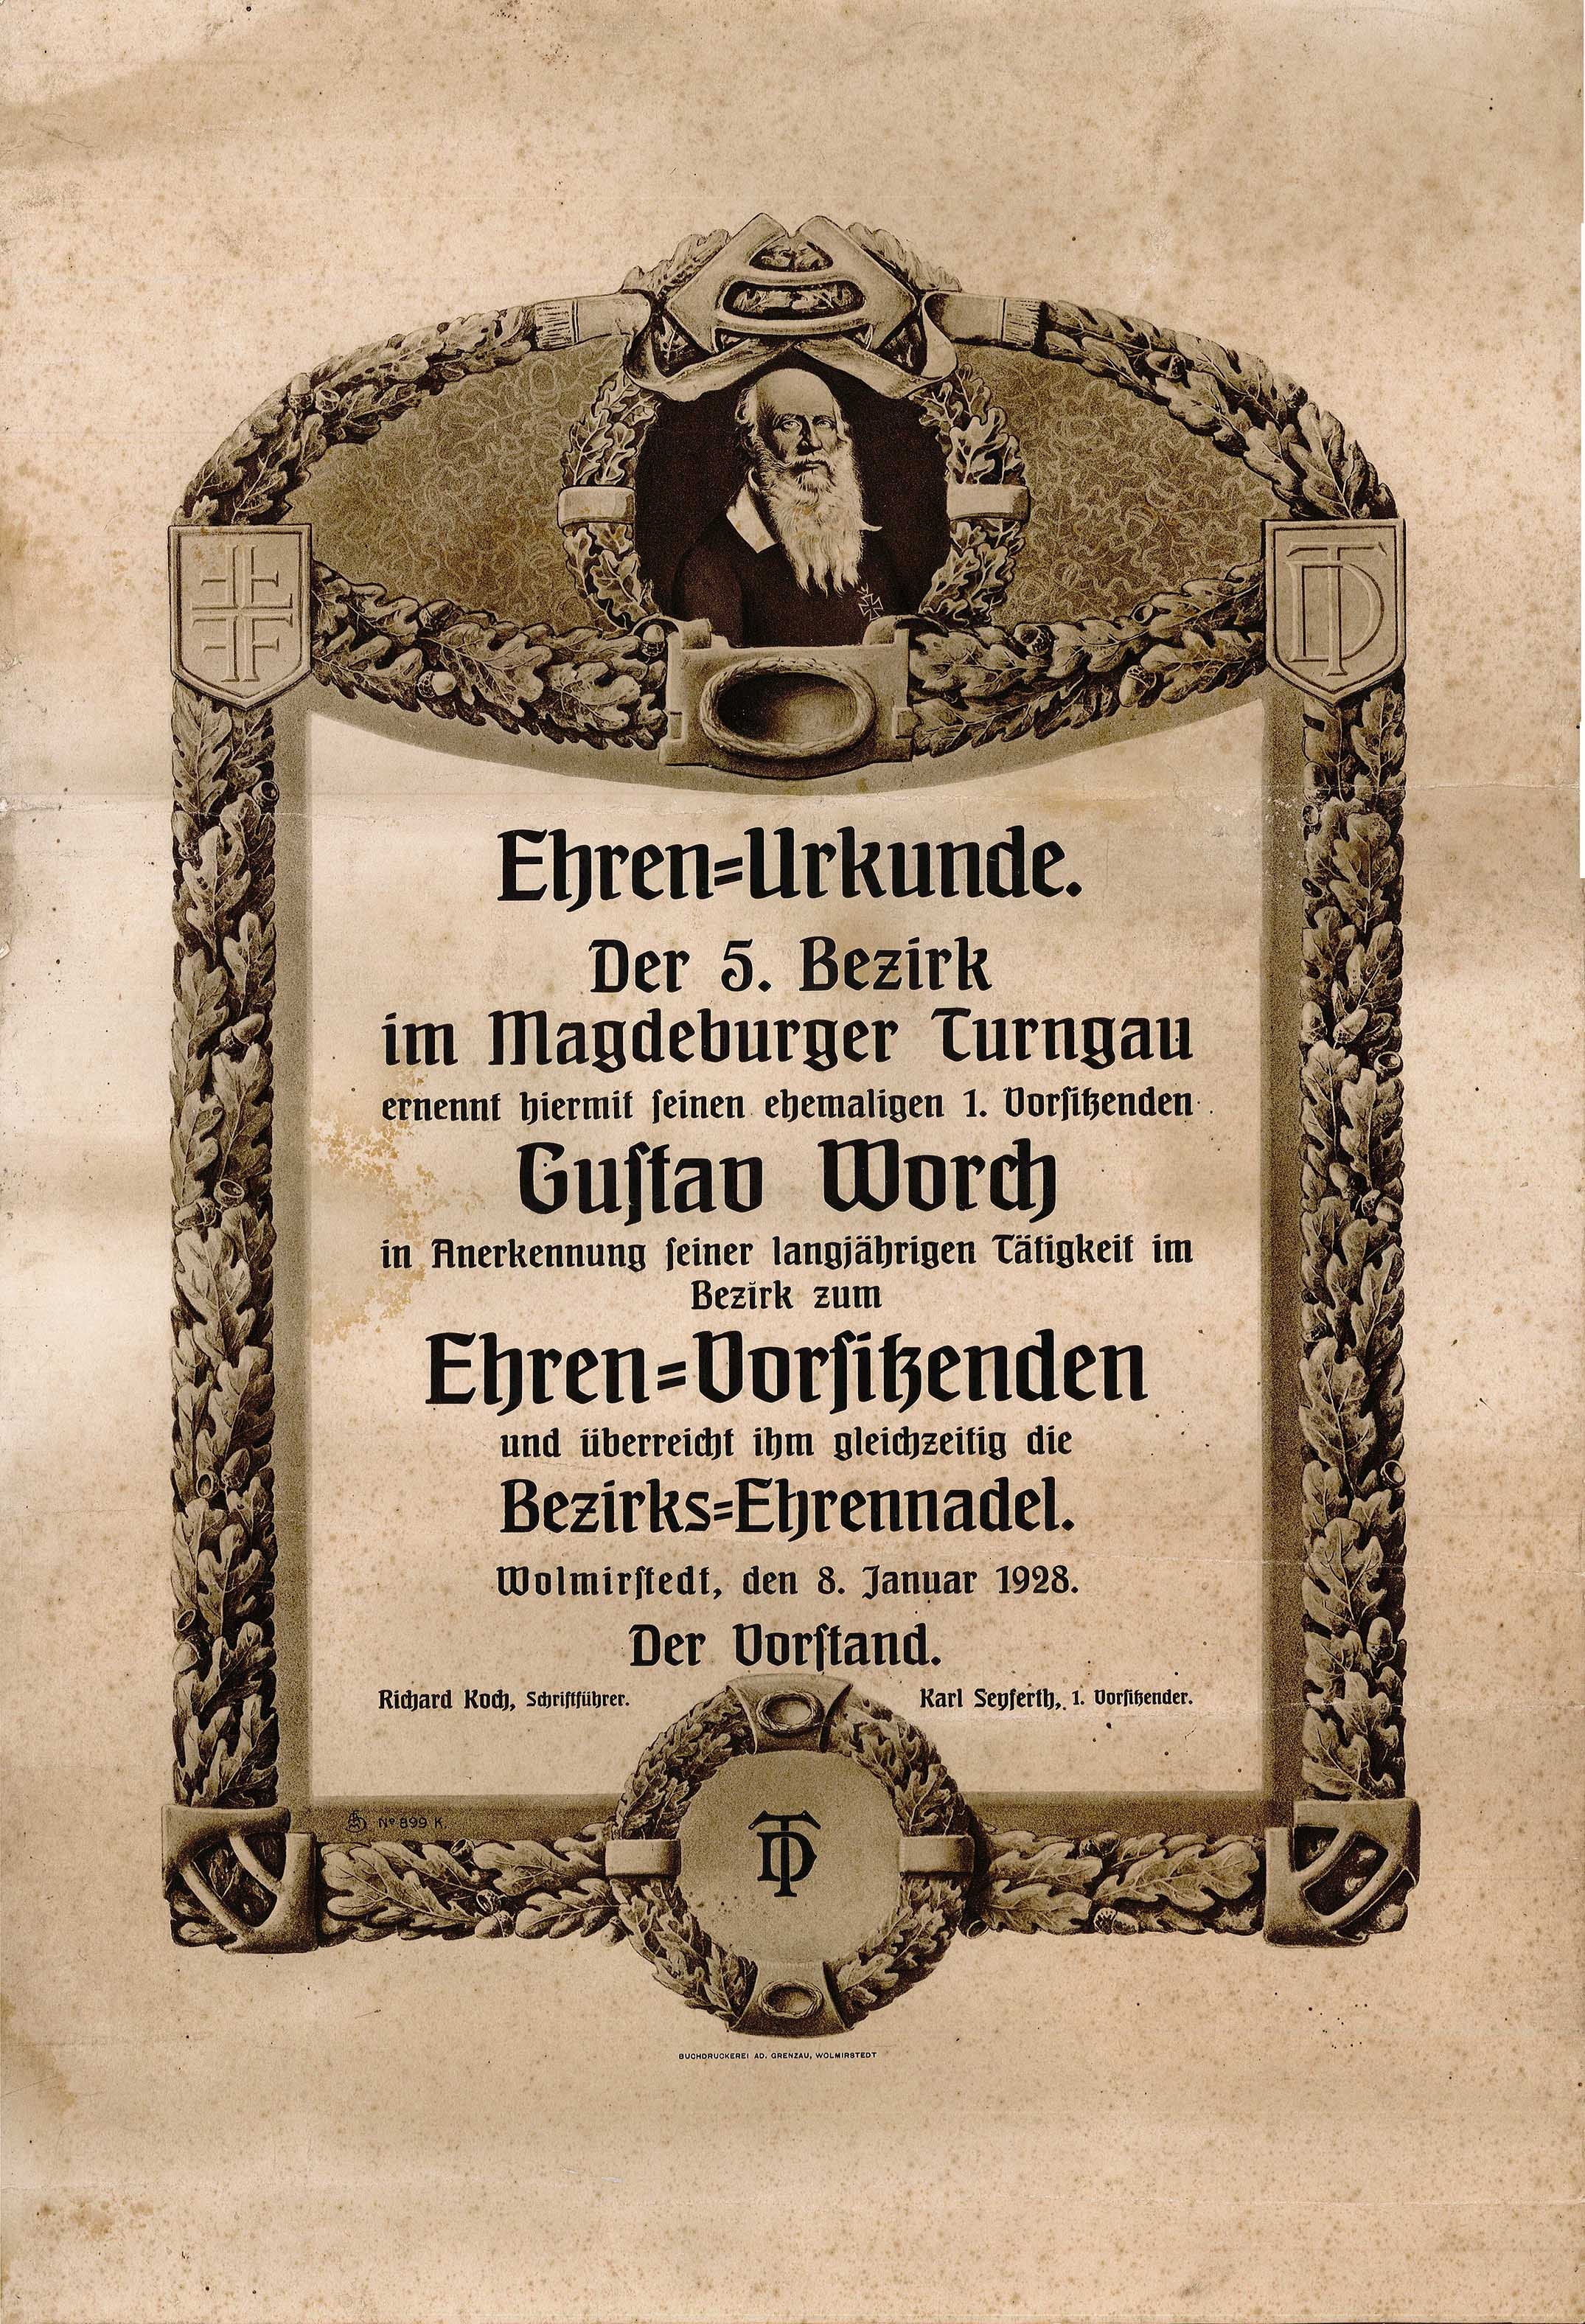 Urkunde der Turnerschaft 1881 e.V. für Gustav Worch (Museum Wolmirstedt RR-F)